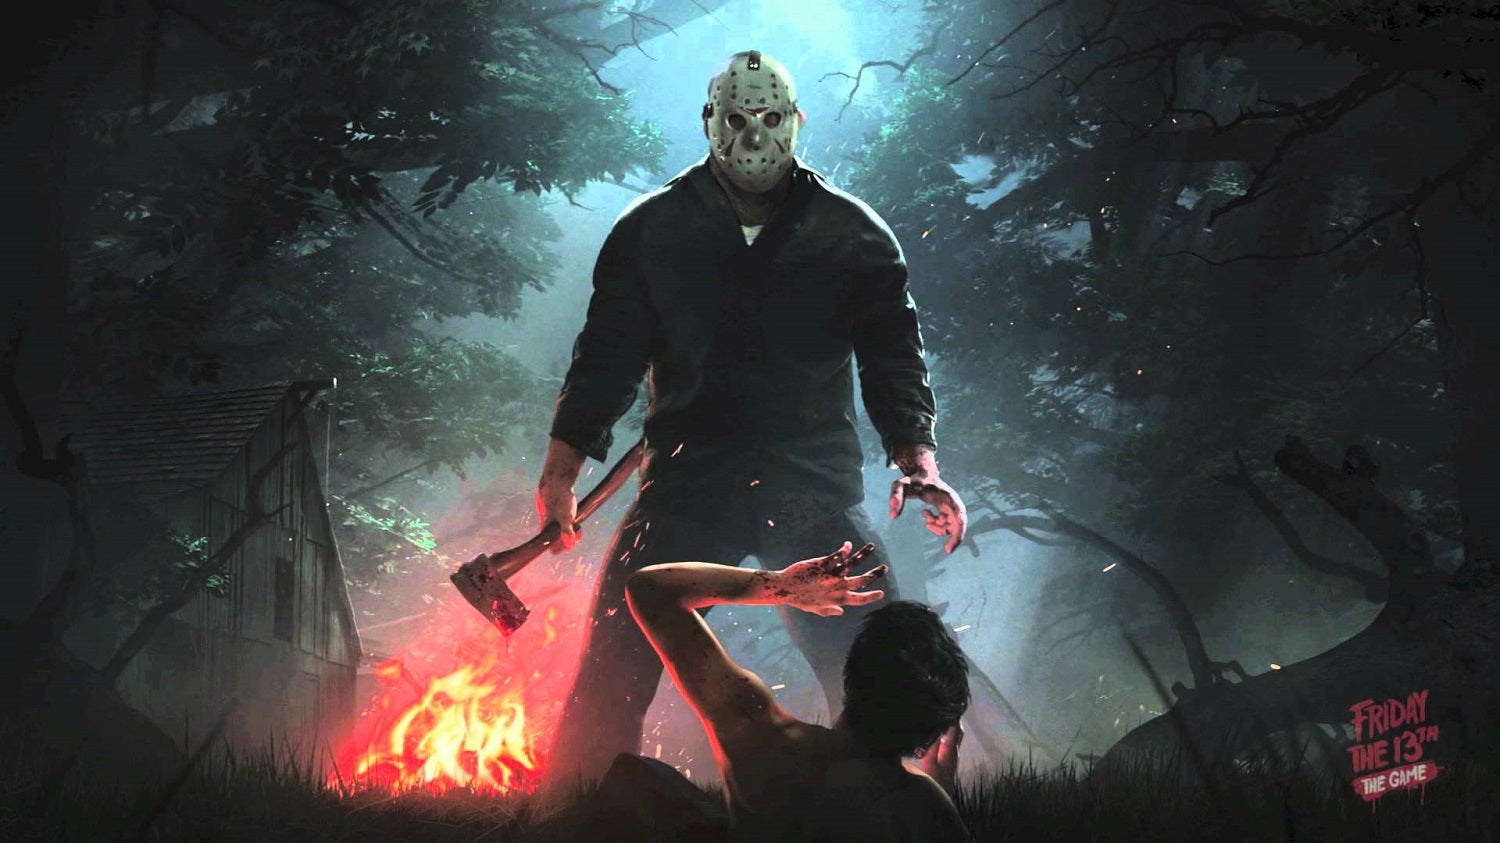 Obrazki dla Friday the 13th: The Game opóźnione do przyszłego roku